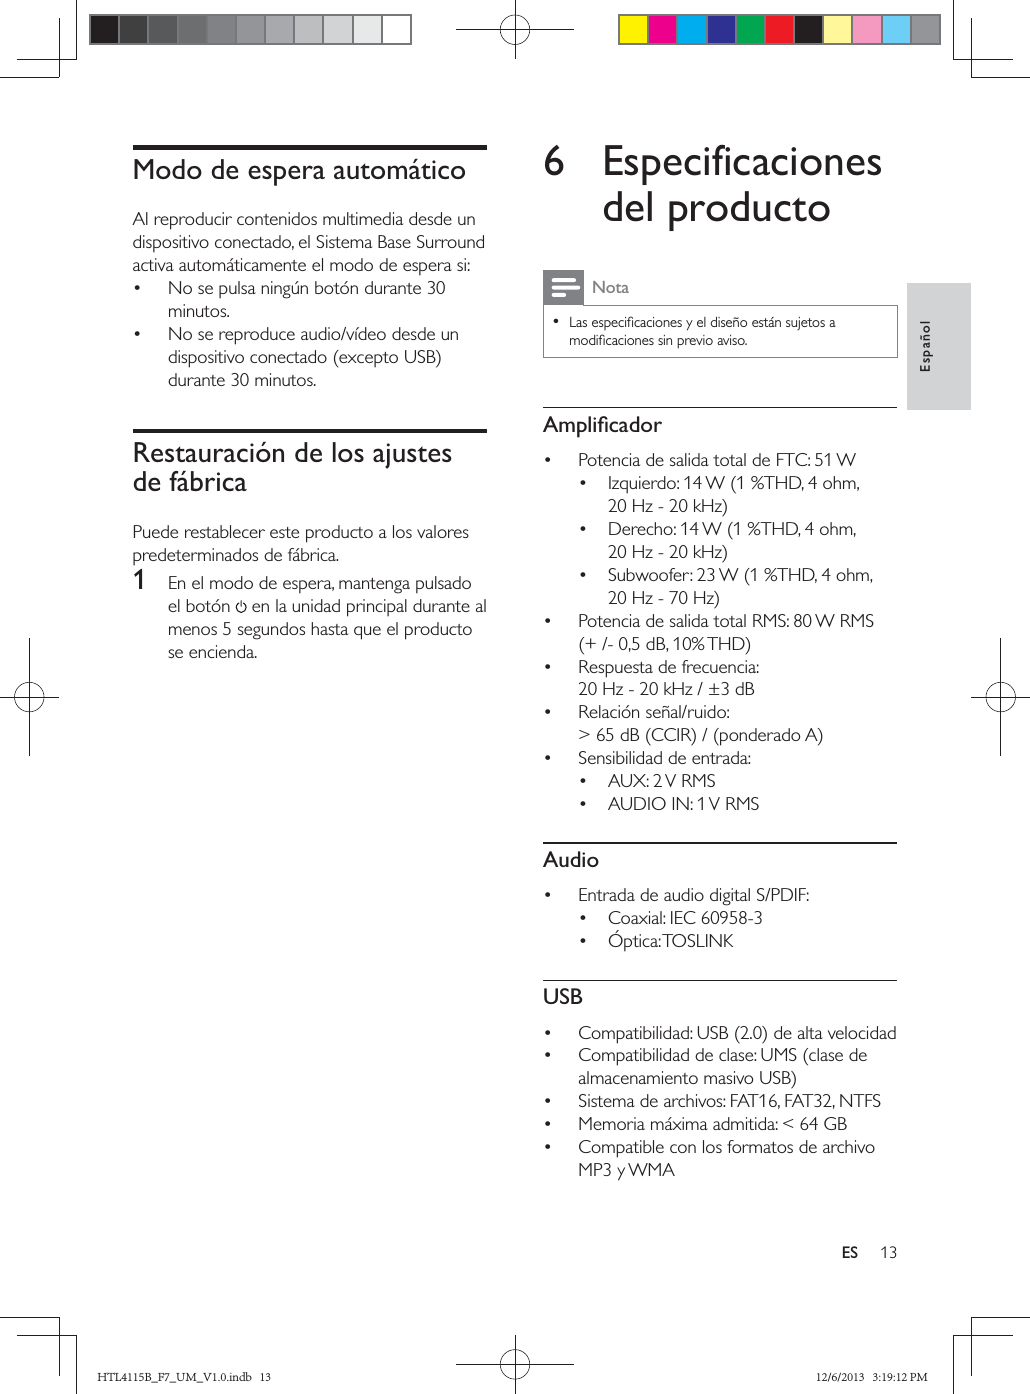 EspañolESModo de espera automático  Restauración de los ajustes de fábrica1   6 Especificaciones del productoNota           Audio   USB     HTL4115B_F7_UM_V1.0.indb   13 12/6/2013   3:19:12 PM